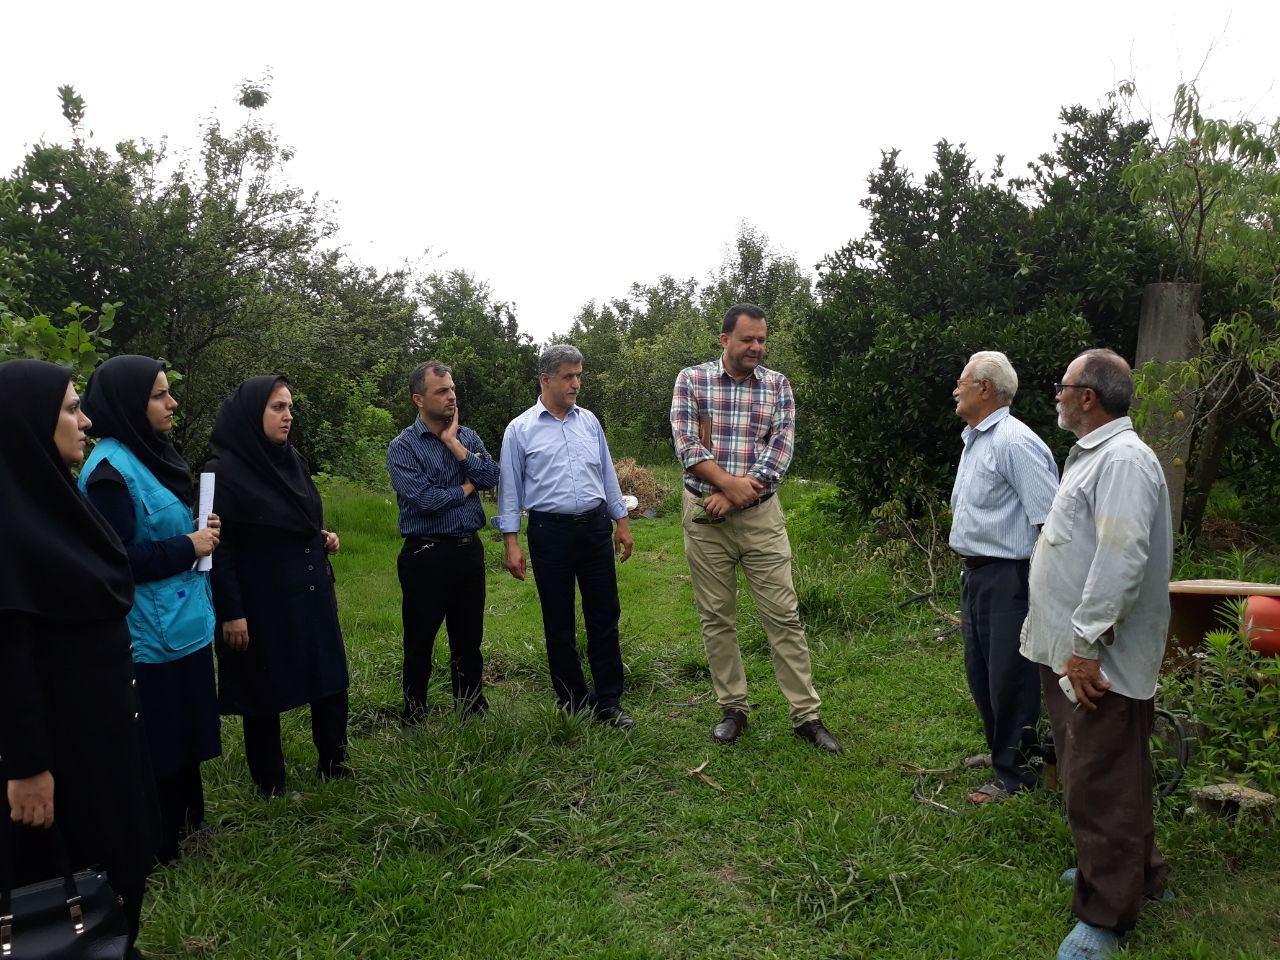 ارائه و انتقال مطالب و داده های علمی به کشاورزان و کارشناسان پهنه ها در شهرستان لاهیجان